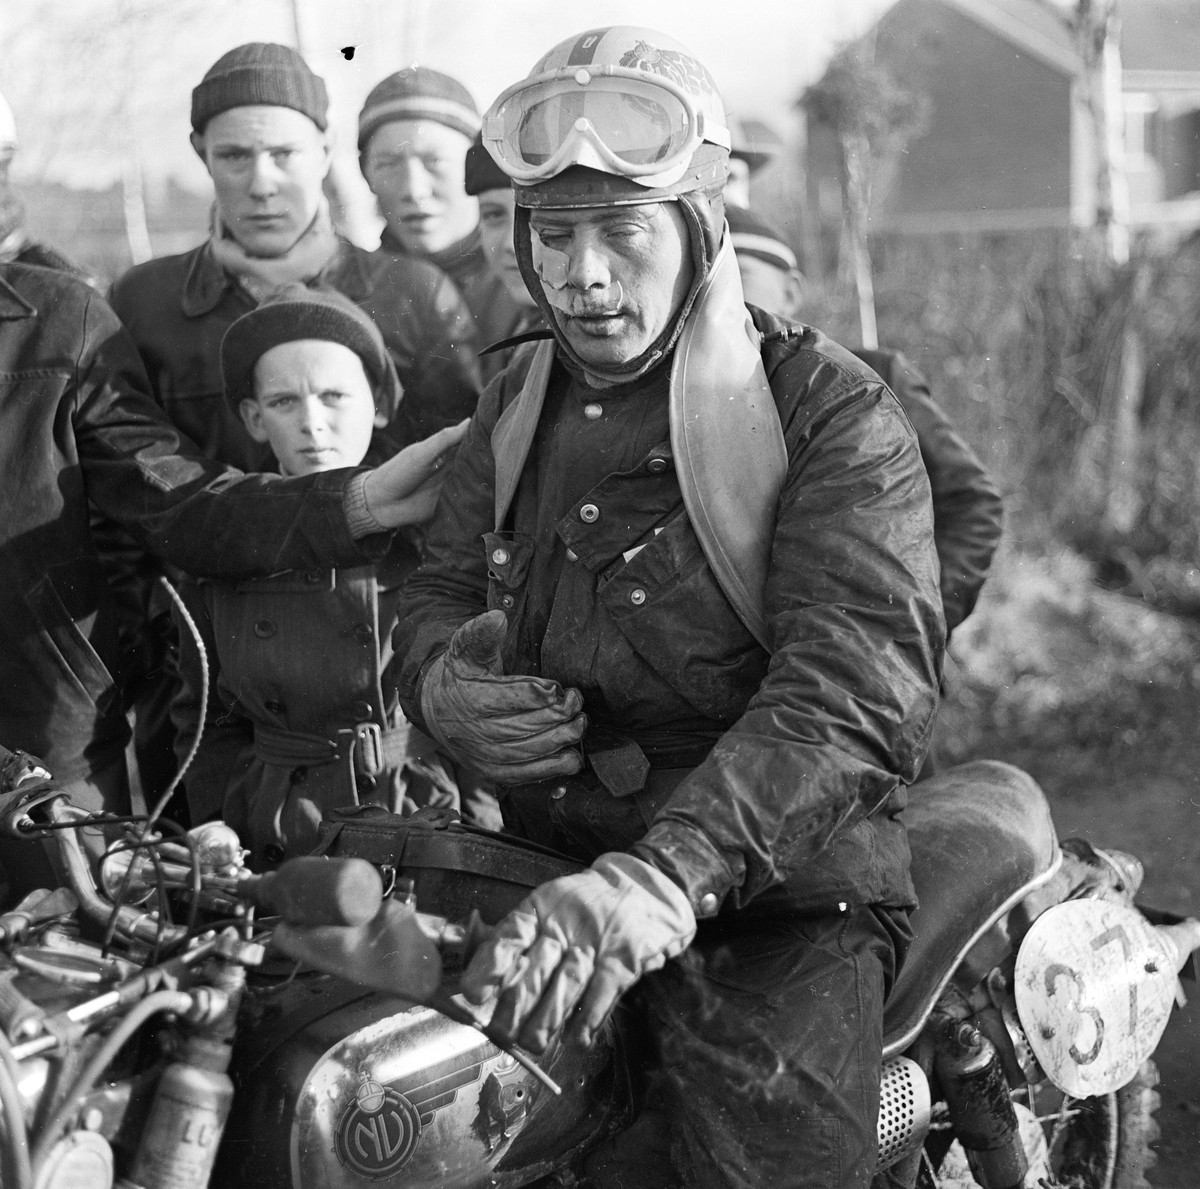 "Stort manfall i krävande tävling" - motorcykeltävlingen Novemberkåsan, Uppsala 1956